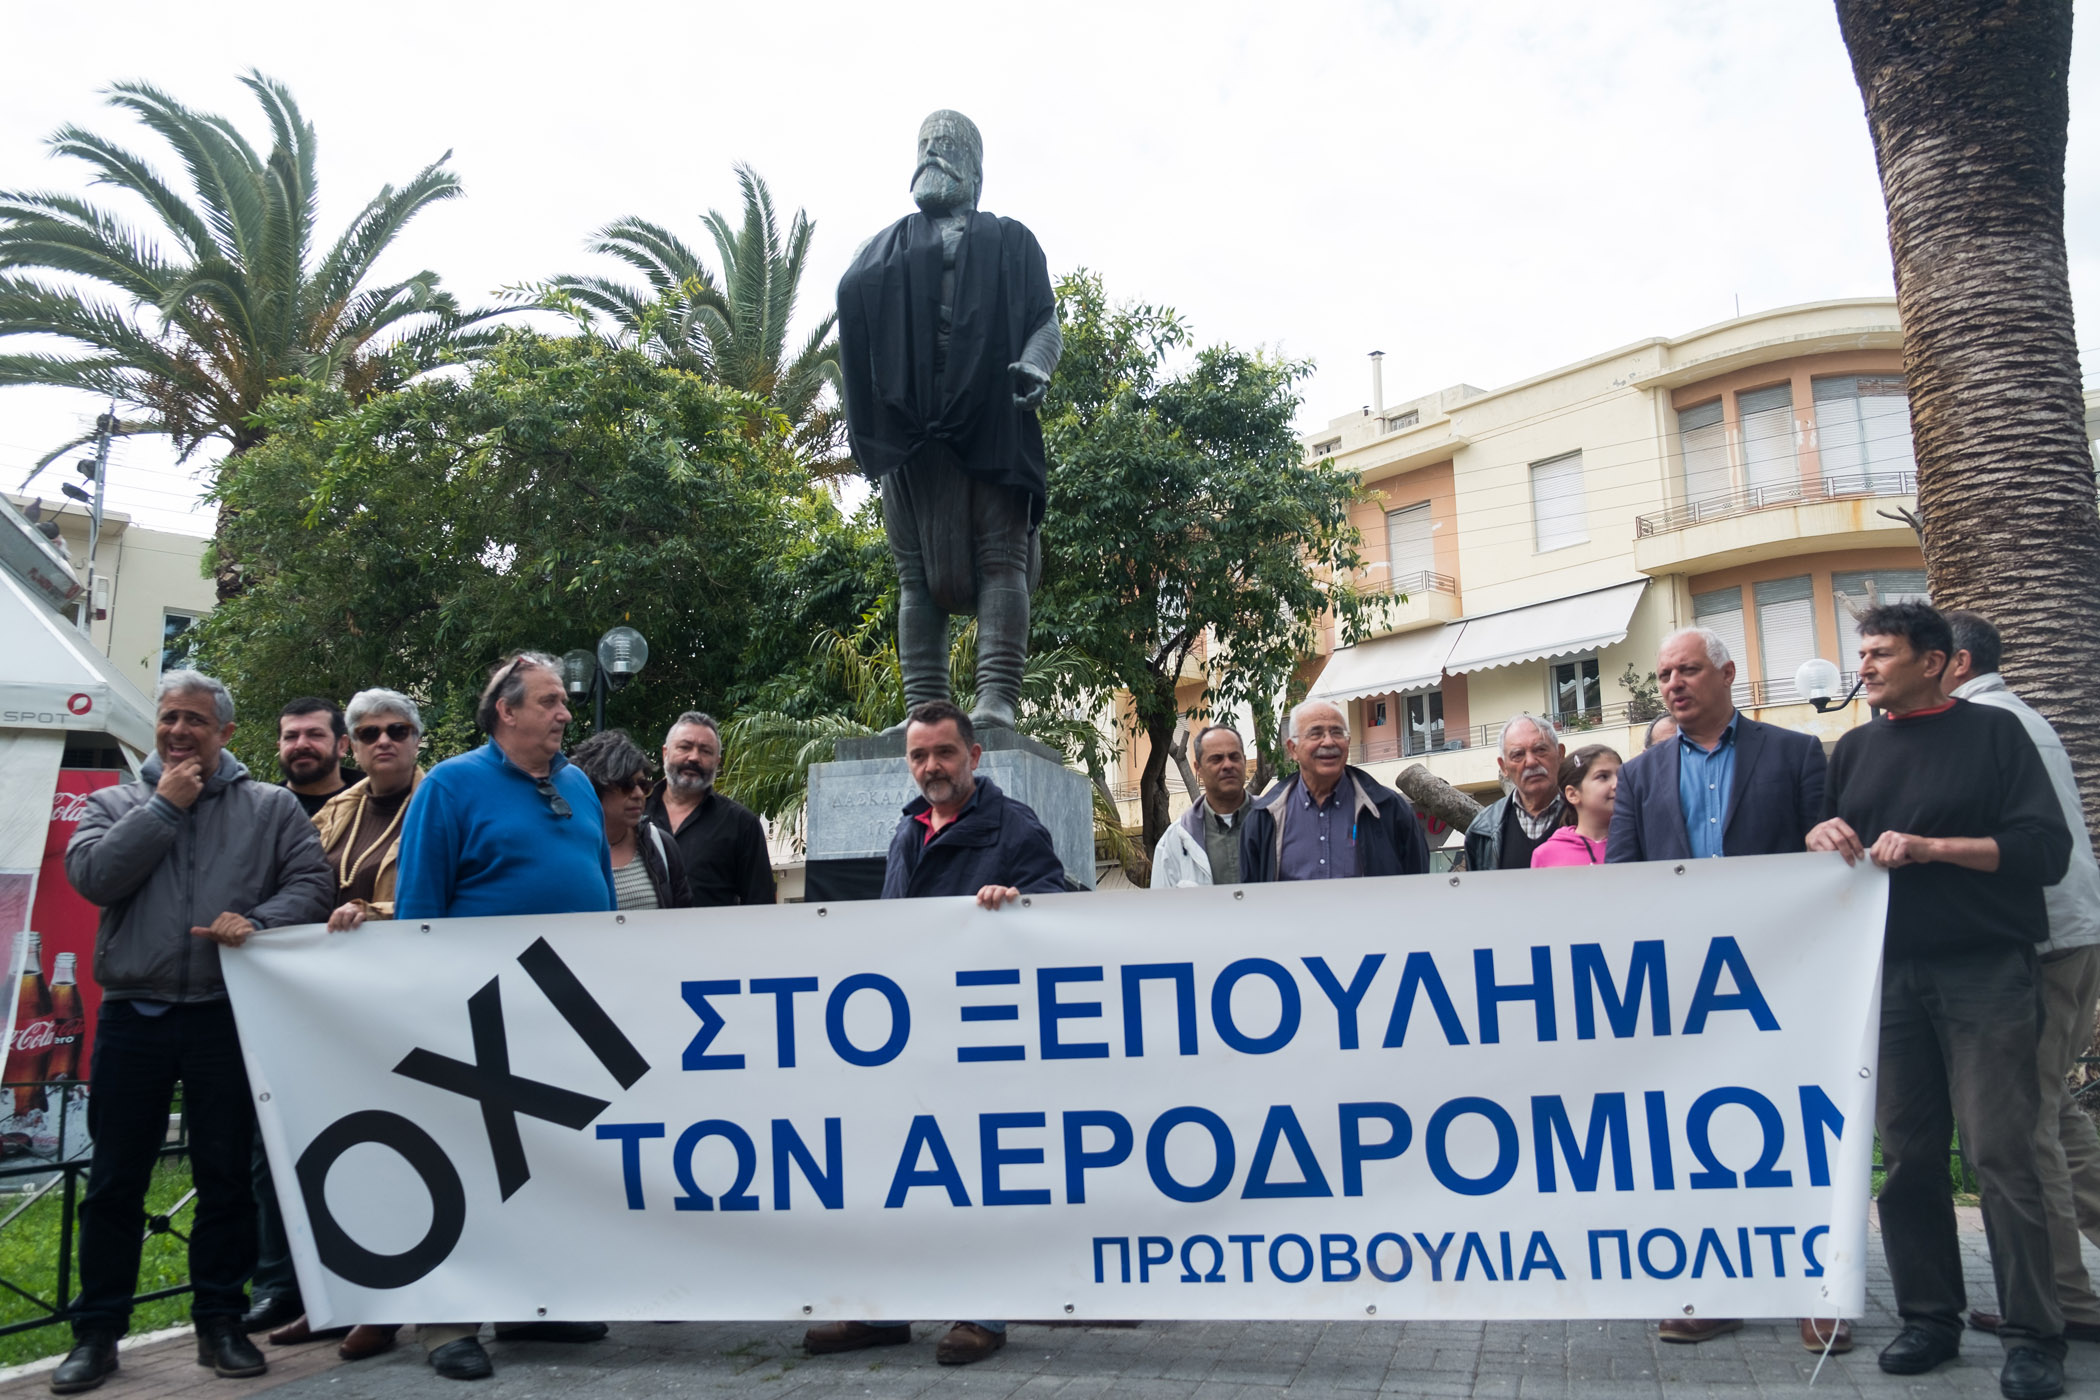 Στα “μαύρα” ο Δασκαλογιάννης – Ν.Ε. Χανίων ΣΥΡΙΖΑ: Είμαστε ενάντια στην παρεμπόδιση ειρηνικών διαμαρτυριών. Οι βουλευτές απουσιάζουν, αλλα θα ενημερωθούν | Φωτορεπορτάζ